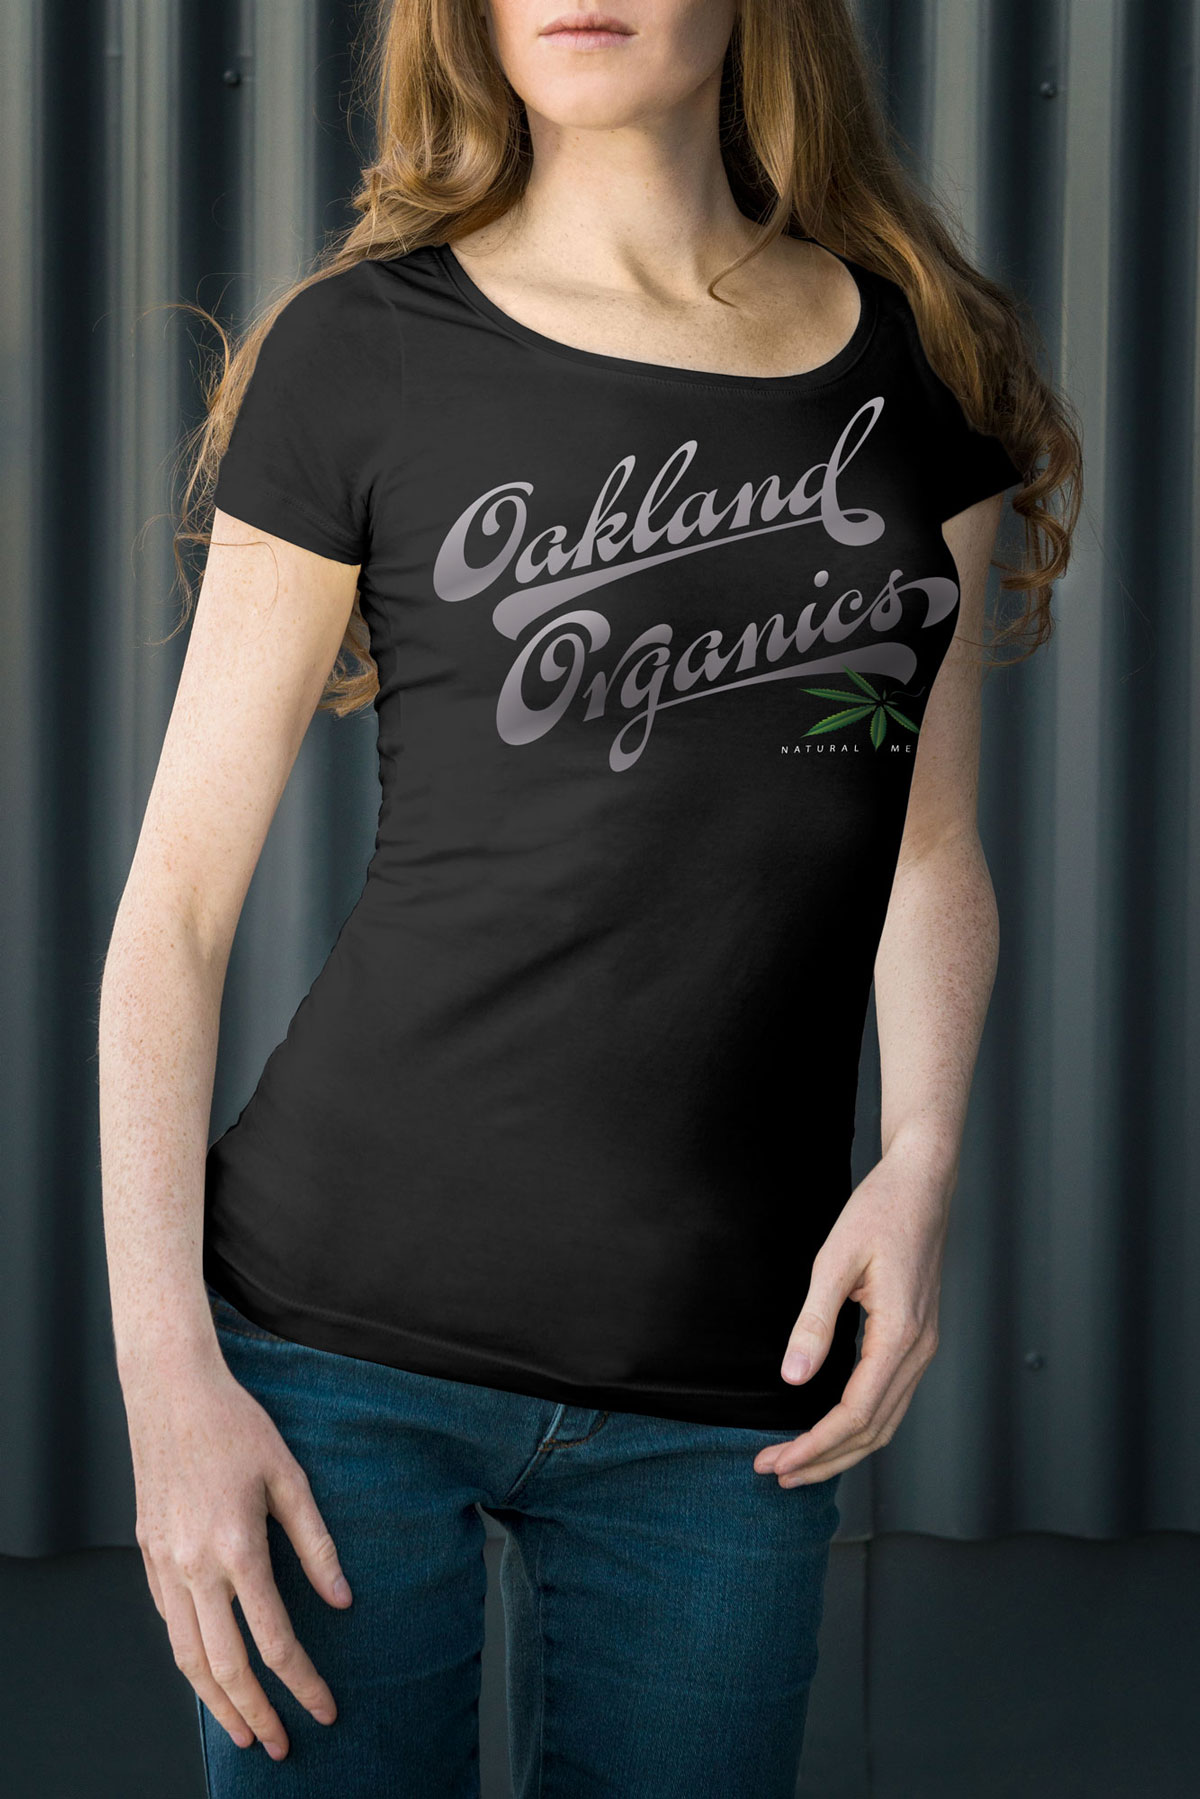 Oakland Organics T-Shirt Design for Women